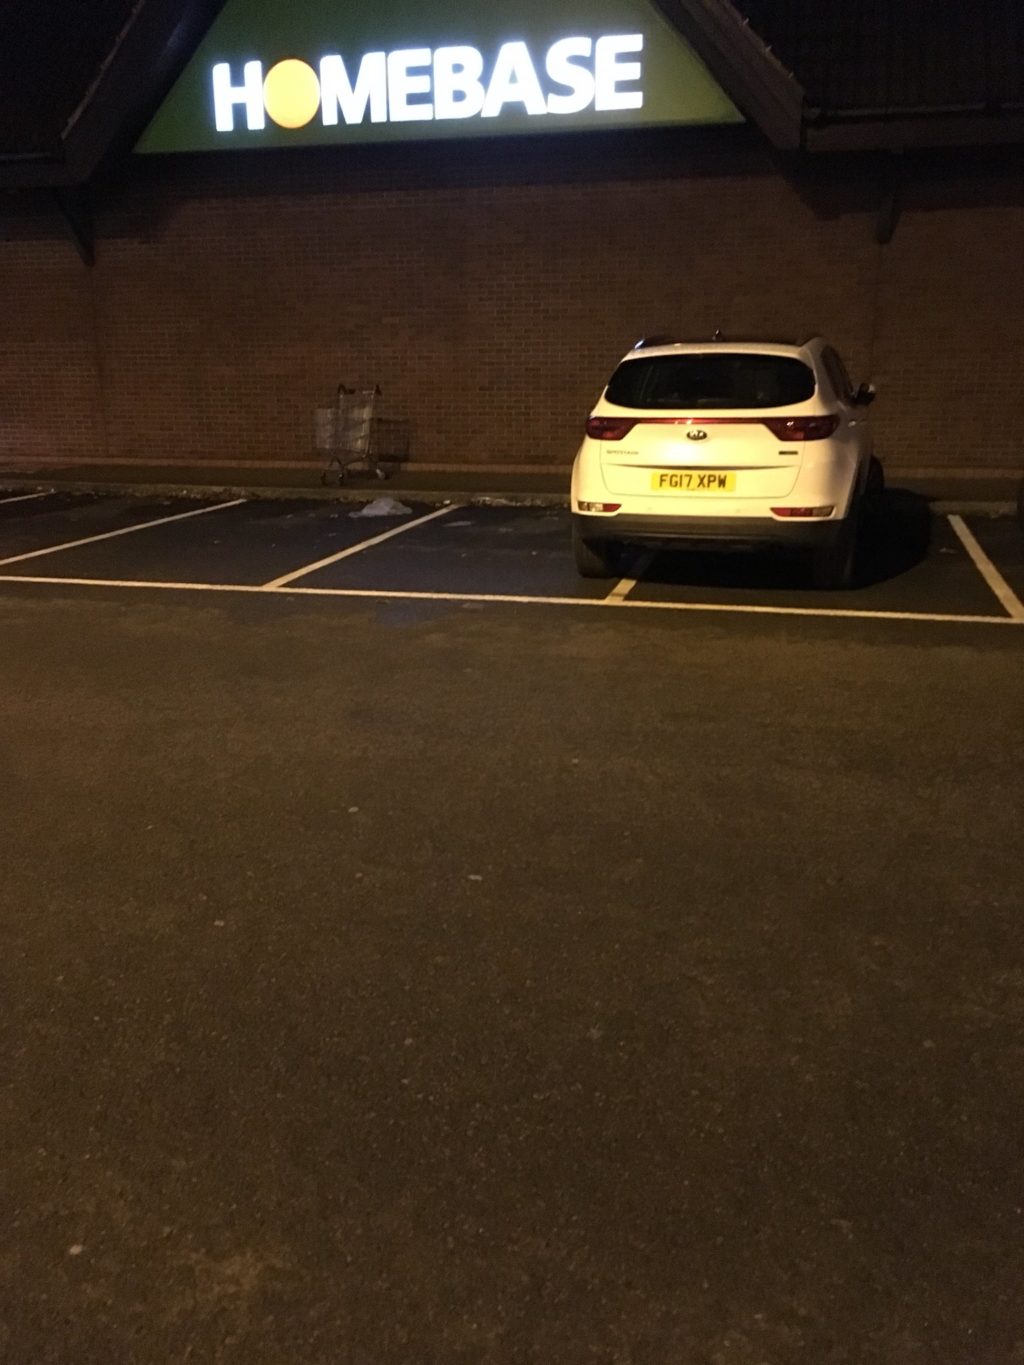 P17 FPW displaying Selfish Parking